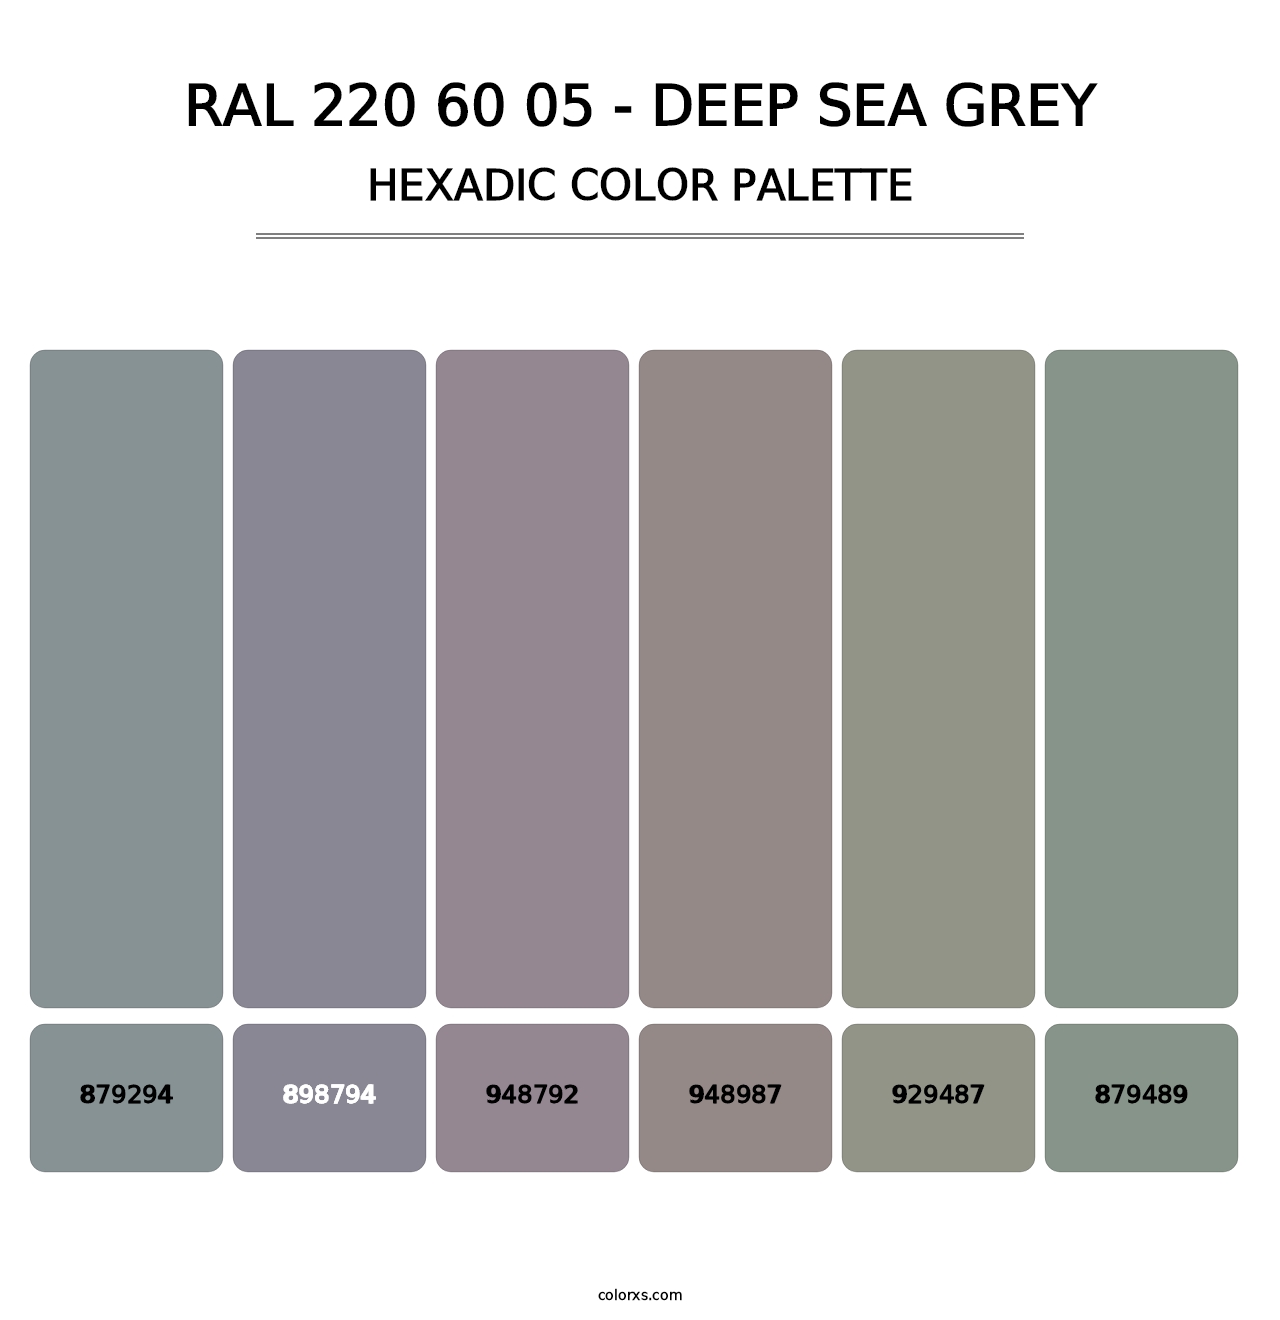 RAL 220 60 05 - Deep Sea Grey - Hexadic Color Palette